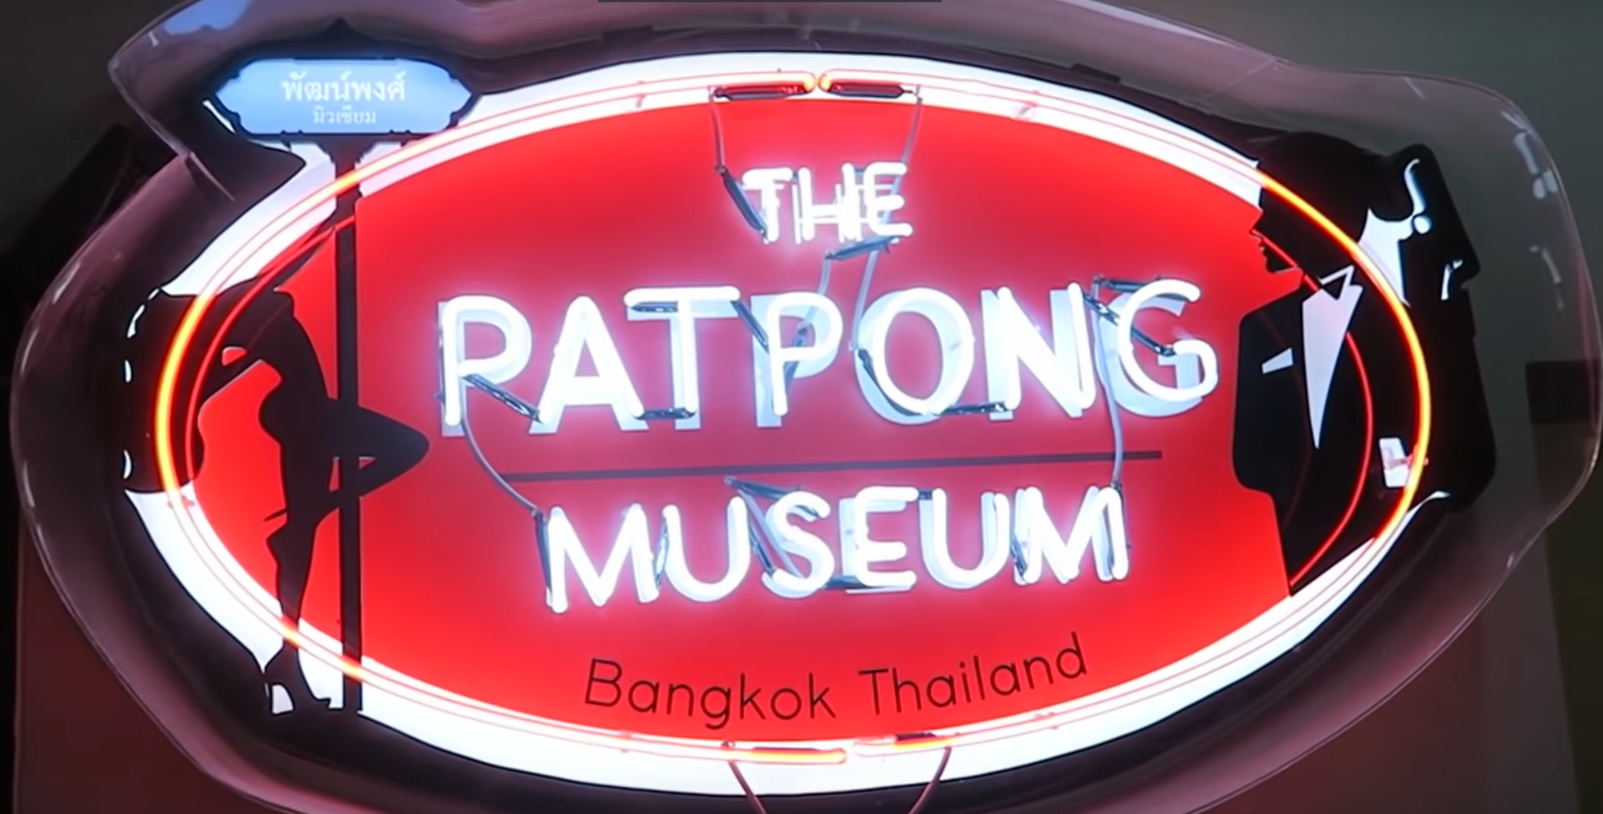 Patpong Museum Bangkok Tripatrek Travel